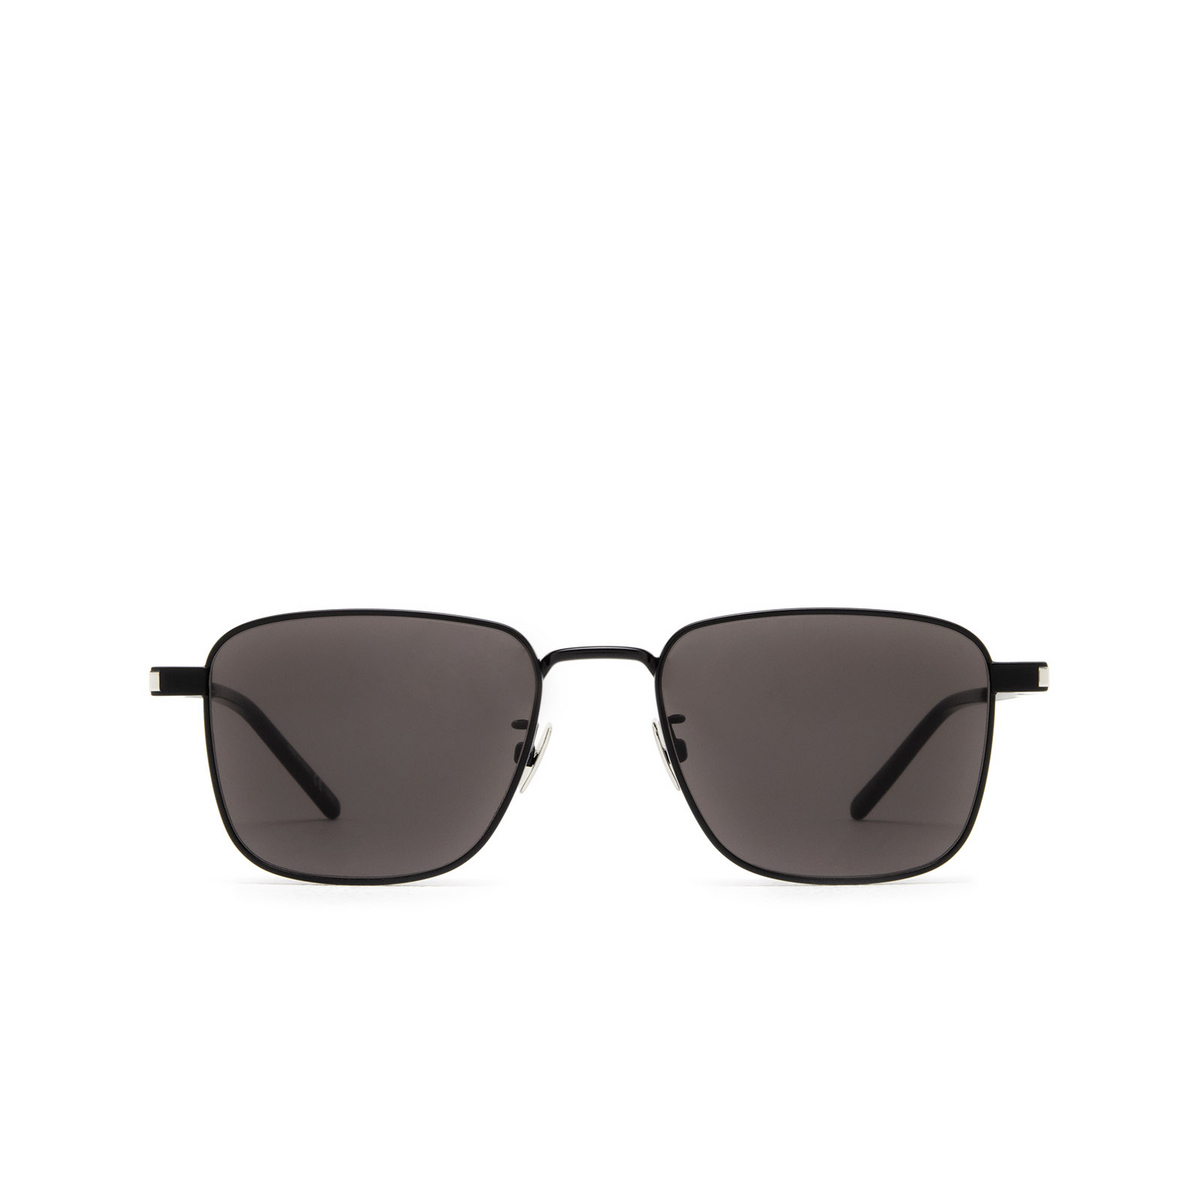 Saint Laurent® Square Sunglasses: SL 529 color Black 001 - front view.